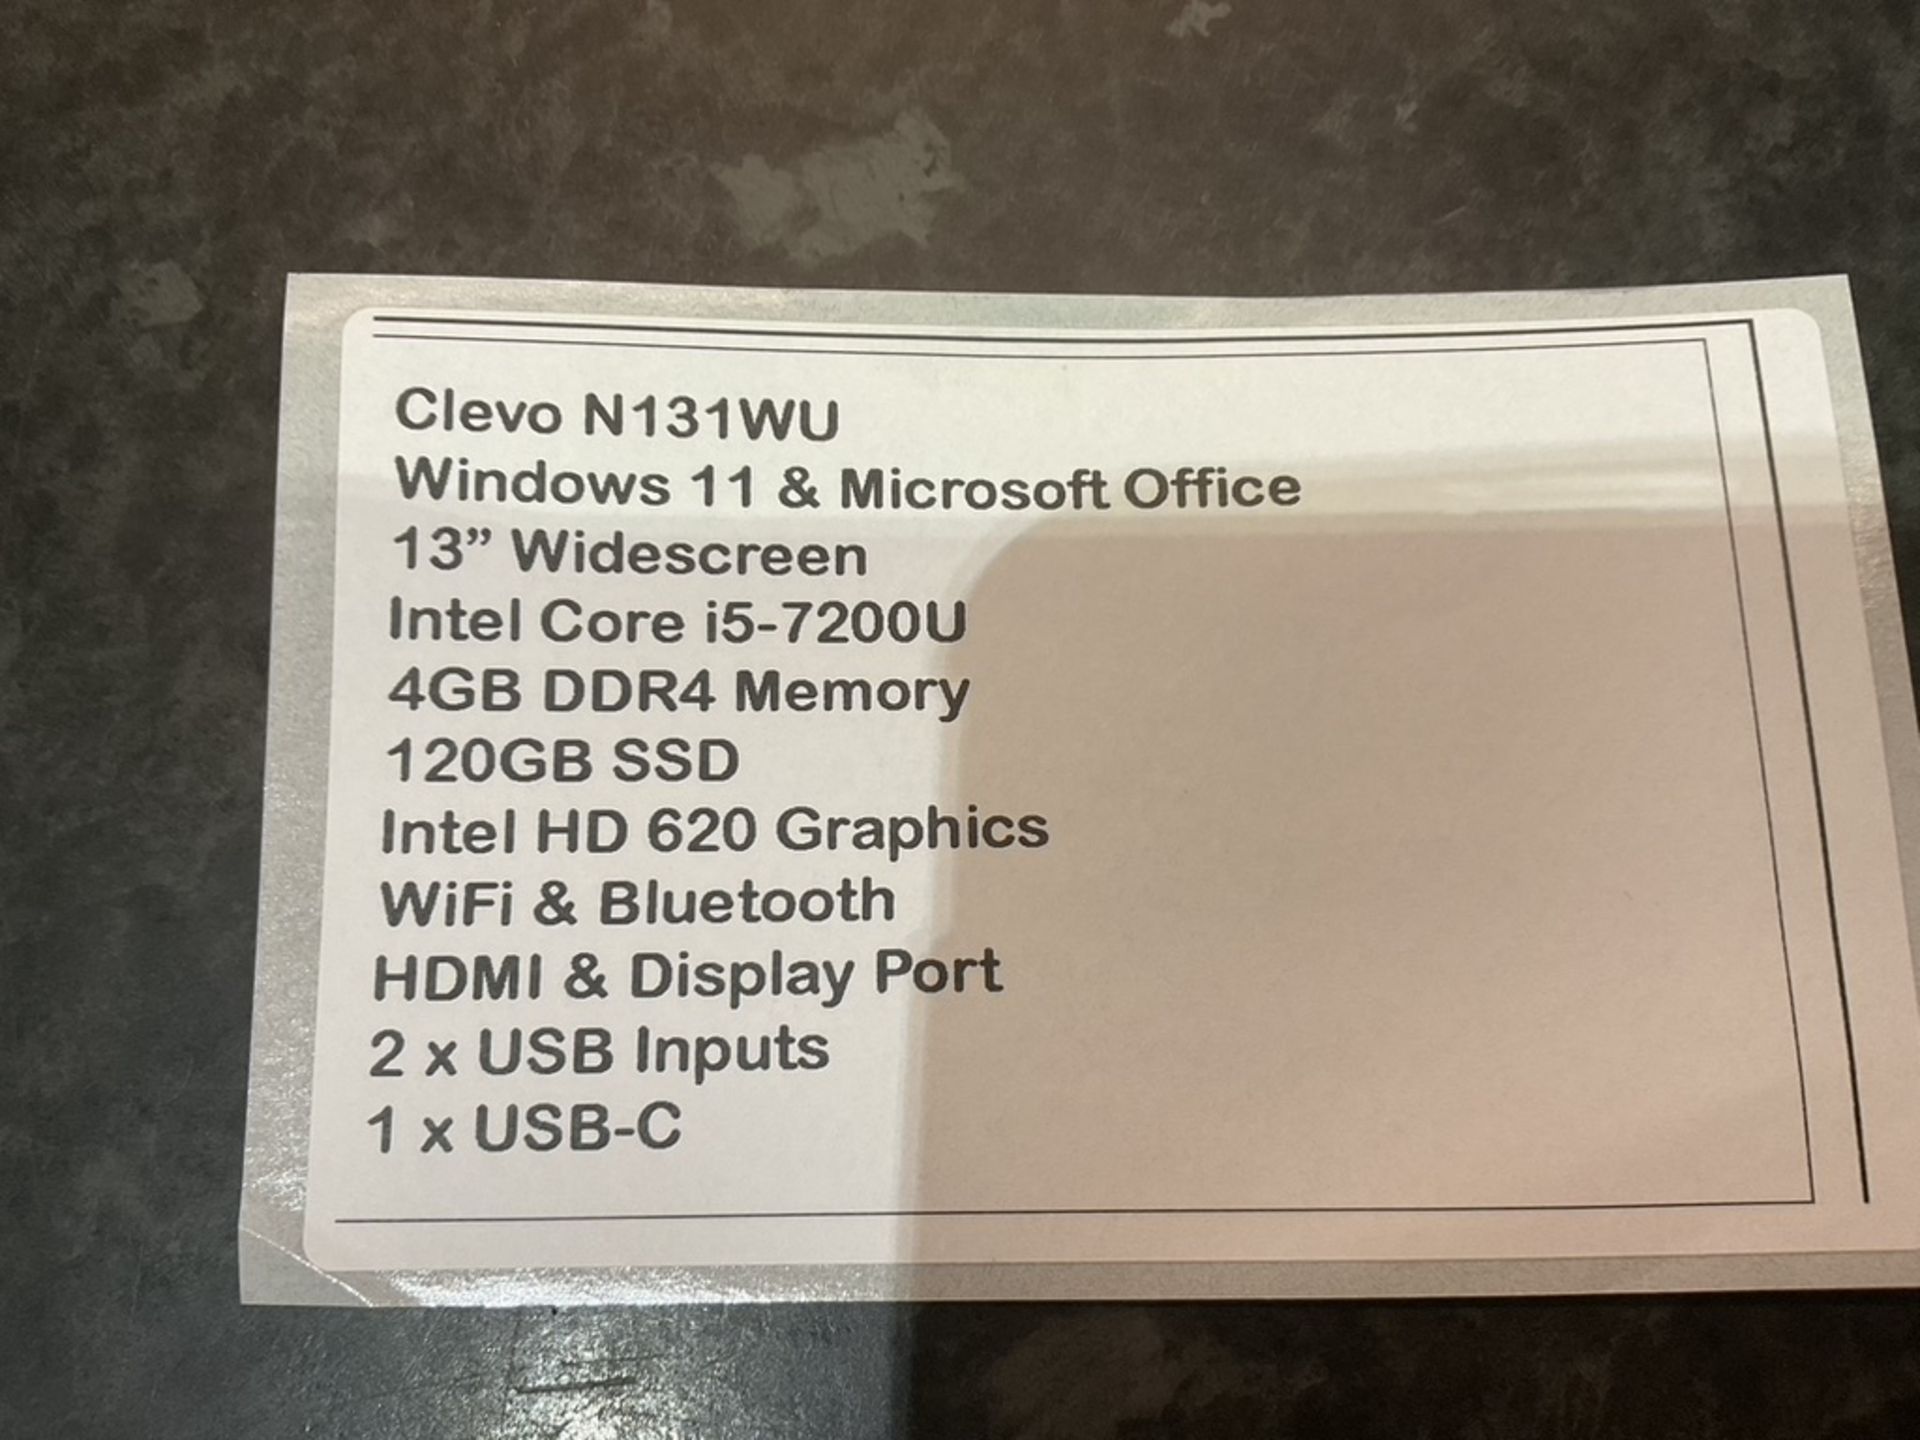 CLEVO N131WU Windows 11 Laptop 13"" Intel Core i5-7200U 4GB DDR4 120GB SSD WiFi Webcam HDMI Office - Image 9 of 9